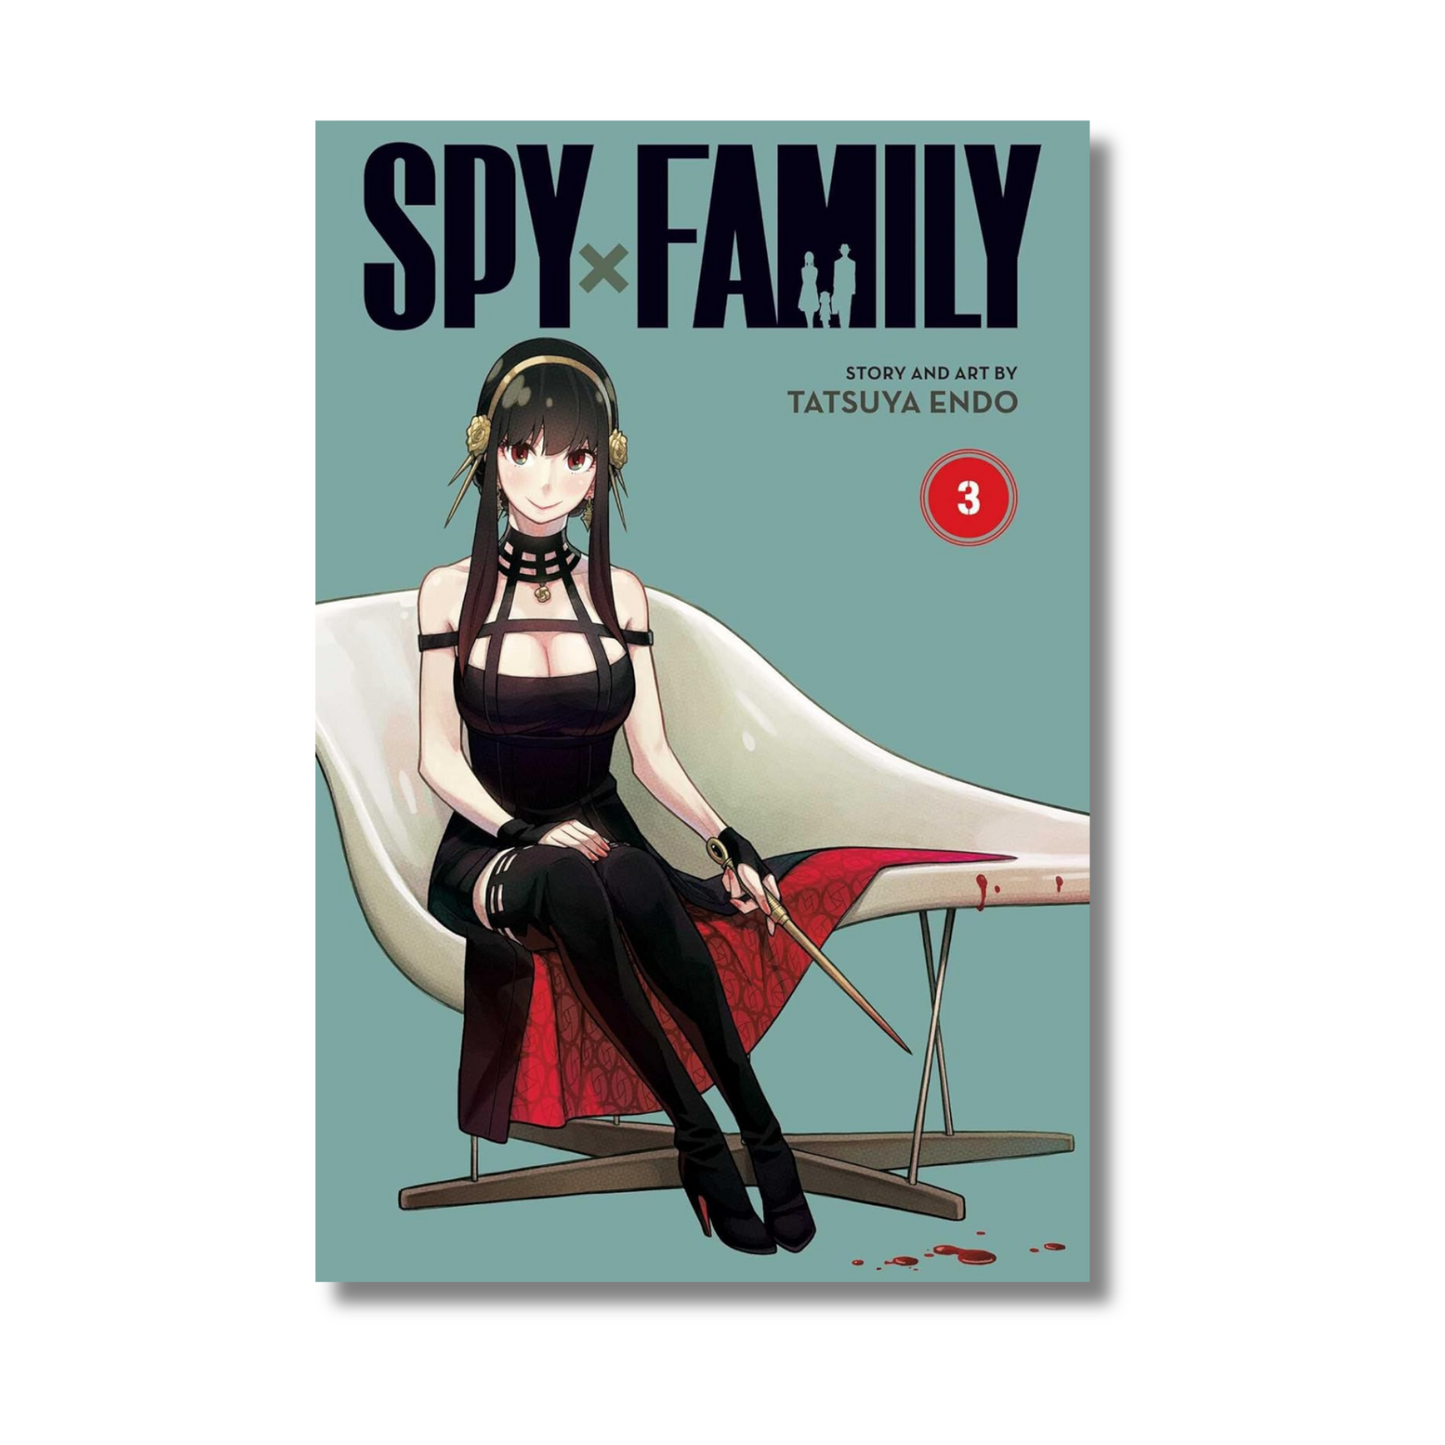 Spy x Family, Vol. 3 by Tatsuya Endo (Paperback)